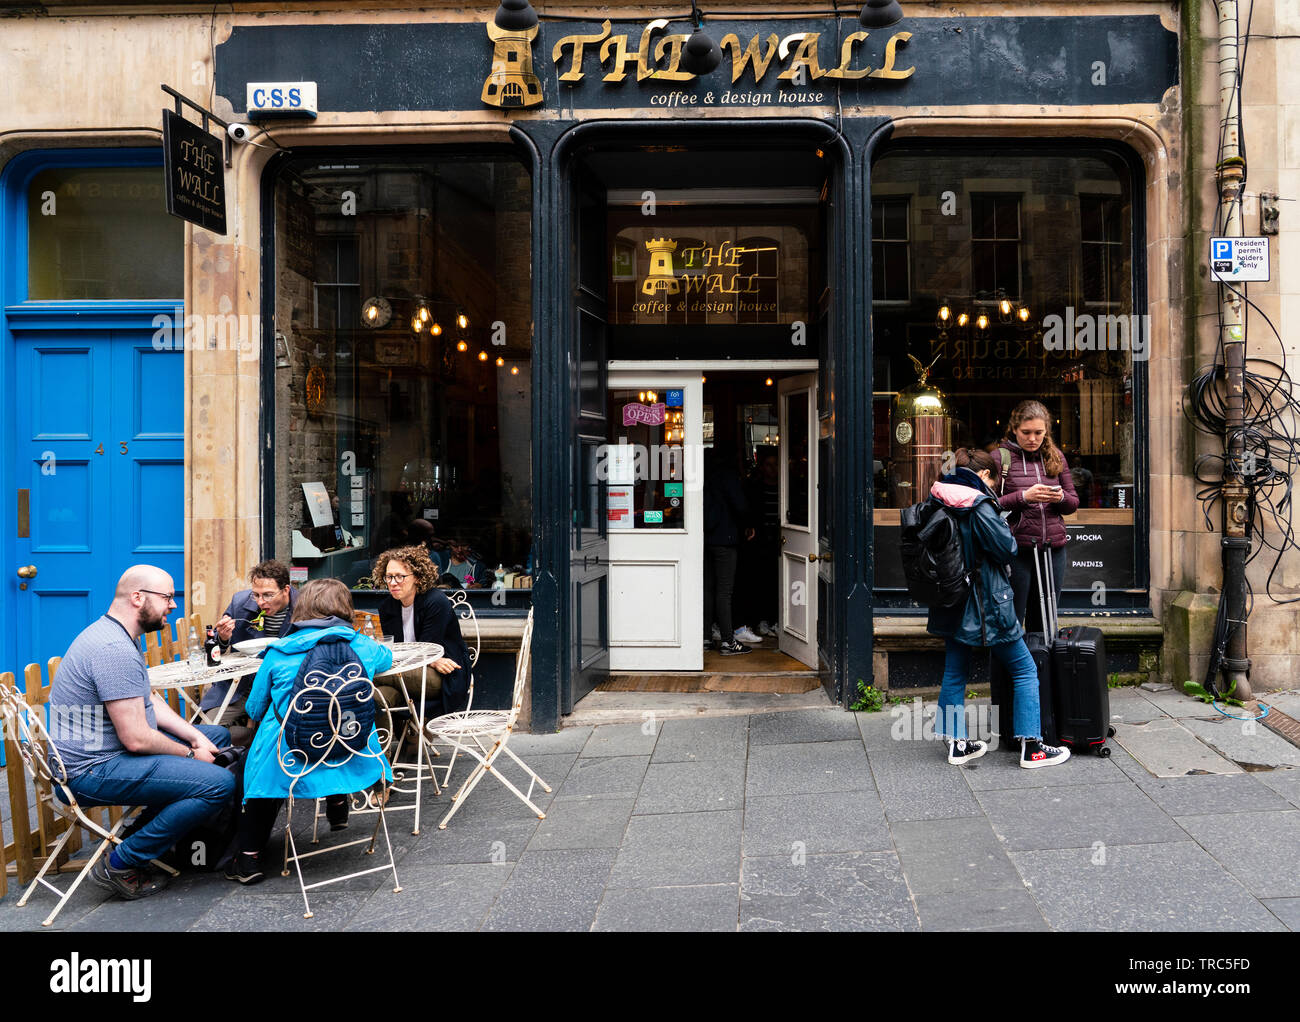 Vue extérieure de personnes dans le mur cafe sur Cockburn Street dans la vieille ville d'Édimbourg, Écosse, Royaume-Uni Banque D'Images